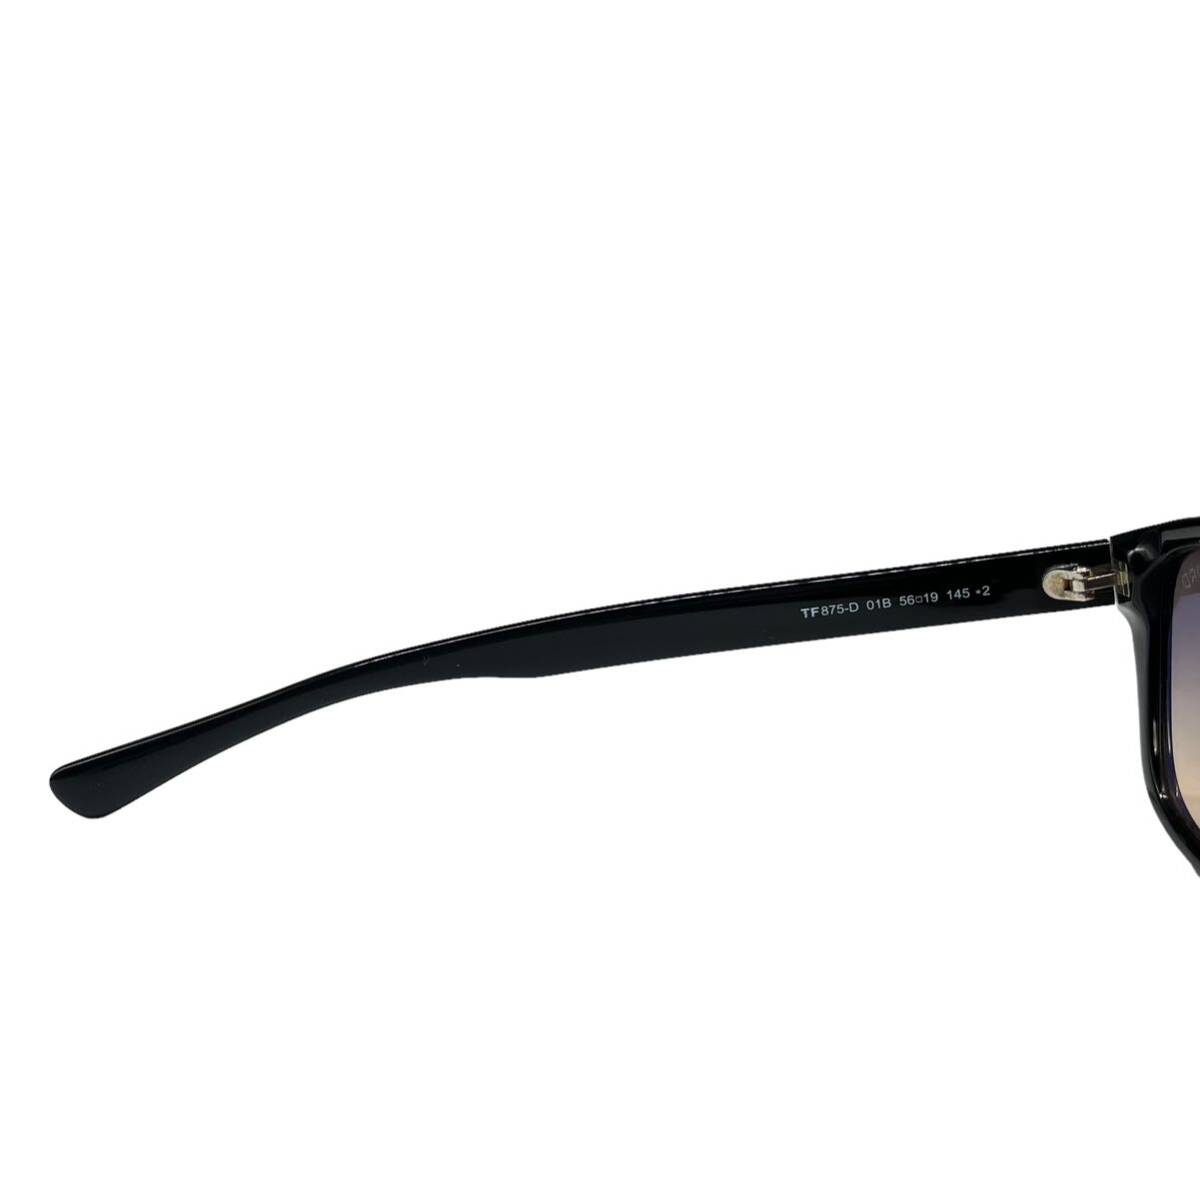 【美品 付属品完備】TOM FORD トムフォード サングラス 色眼鏡 メガネ TF875-D 01-B 5619 145 ブラック 黒 メンズ ユニセックス _画像7